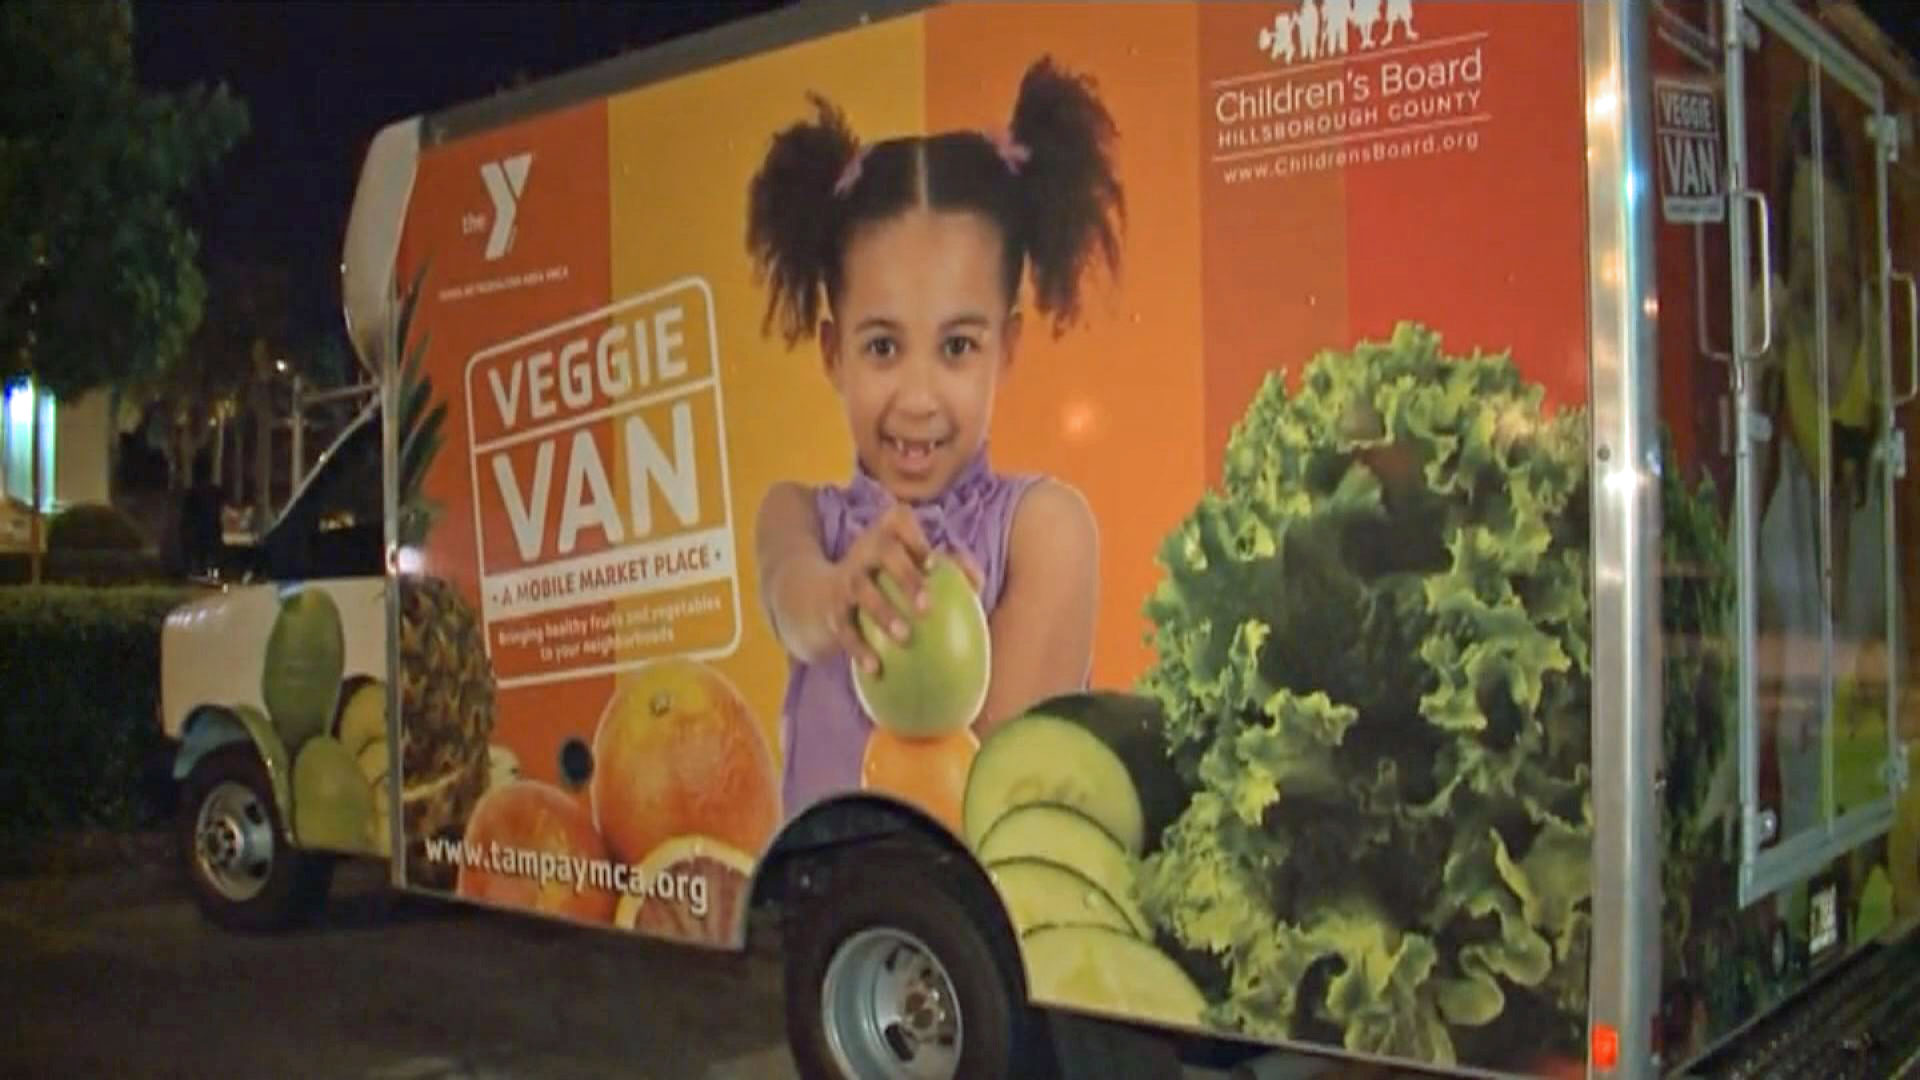 YMCA Veggie Van rolling through the Bay area